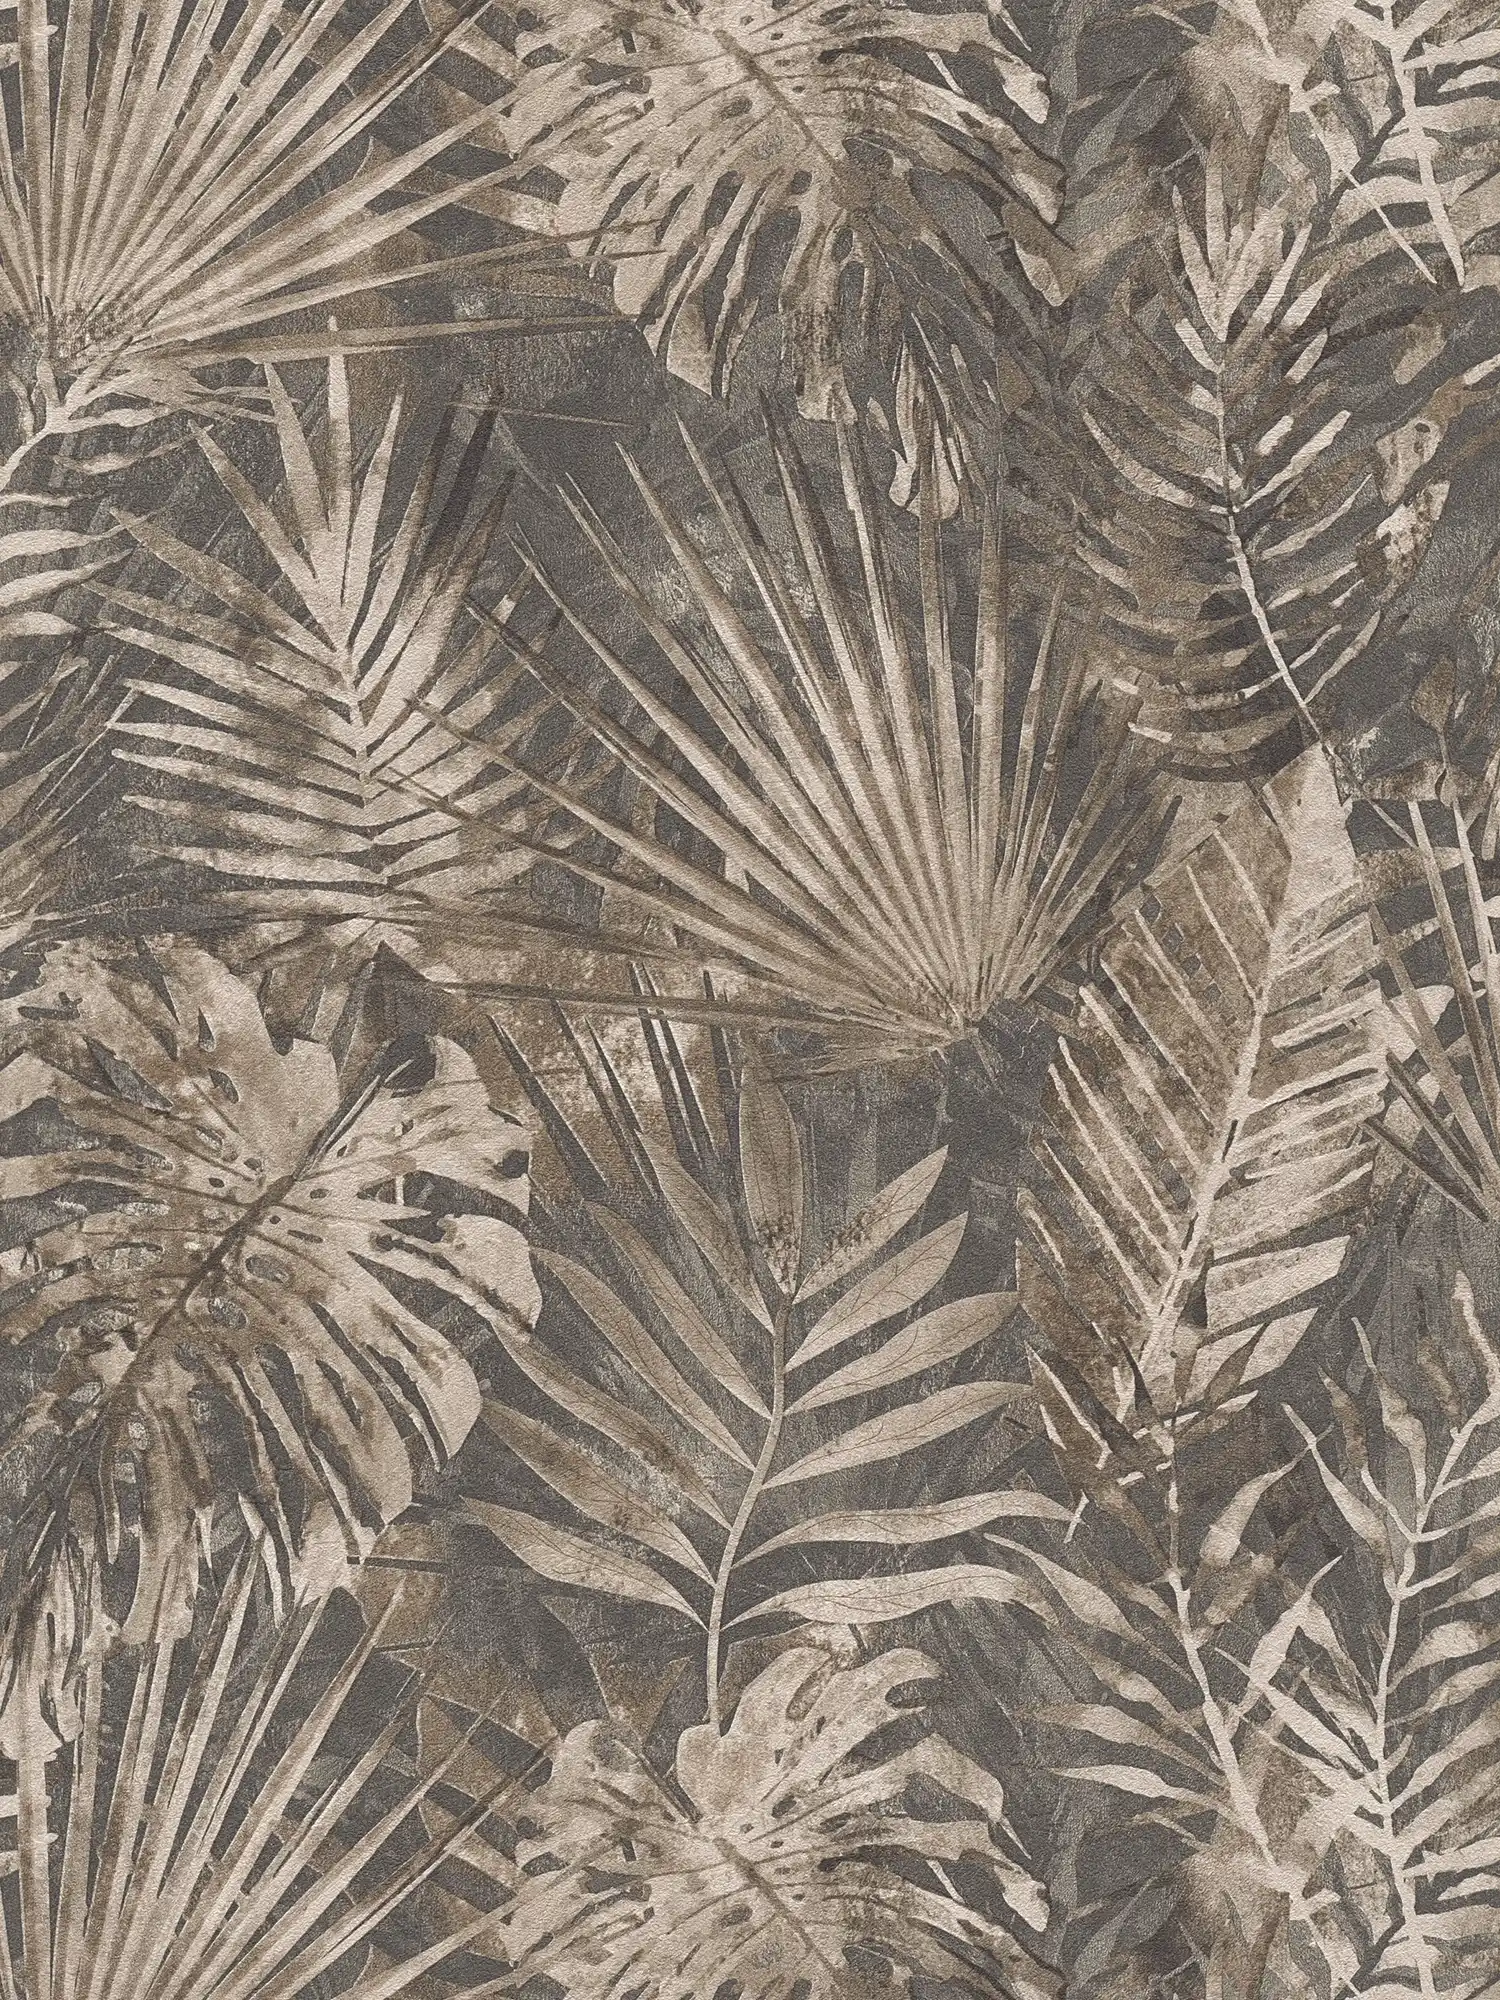         Dschungeltapete mit tropischem Blättermuster PVC-frei – Braun, Beige, Anthrazit
    